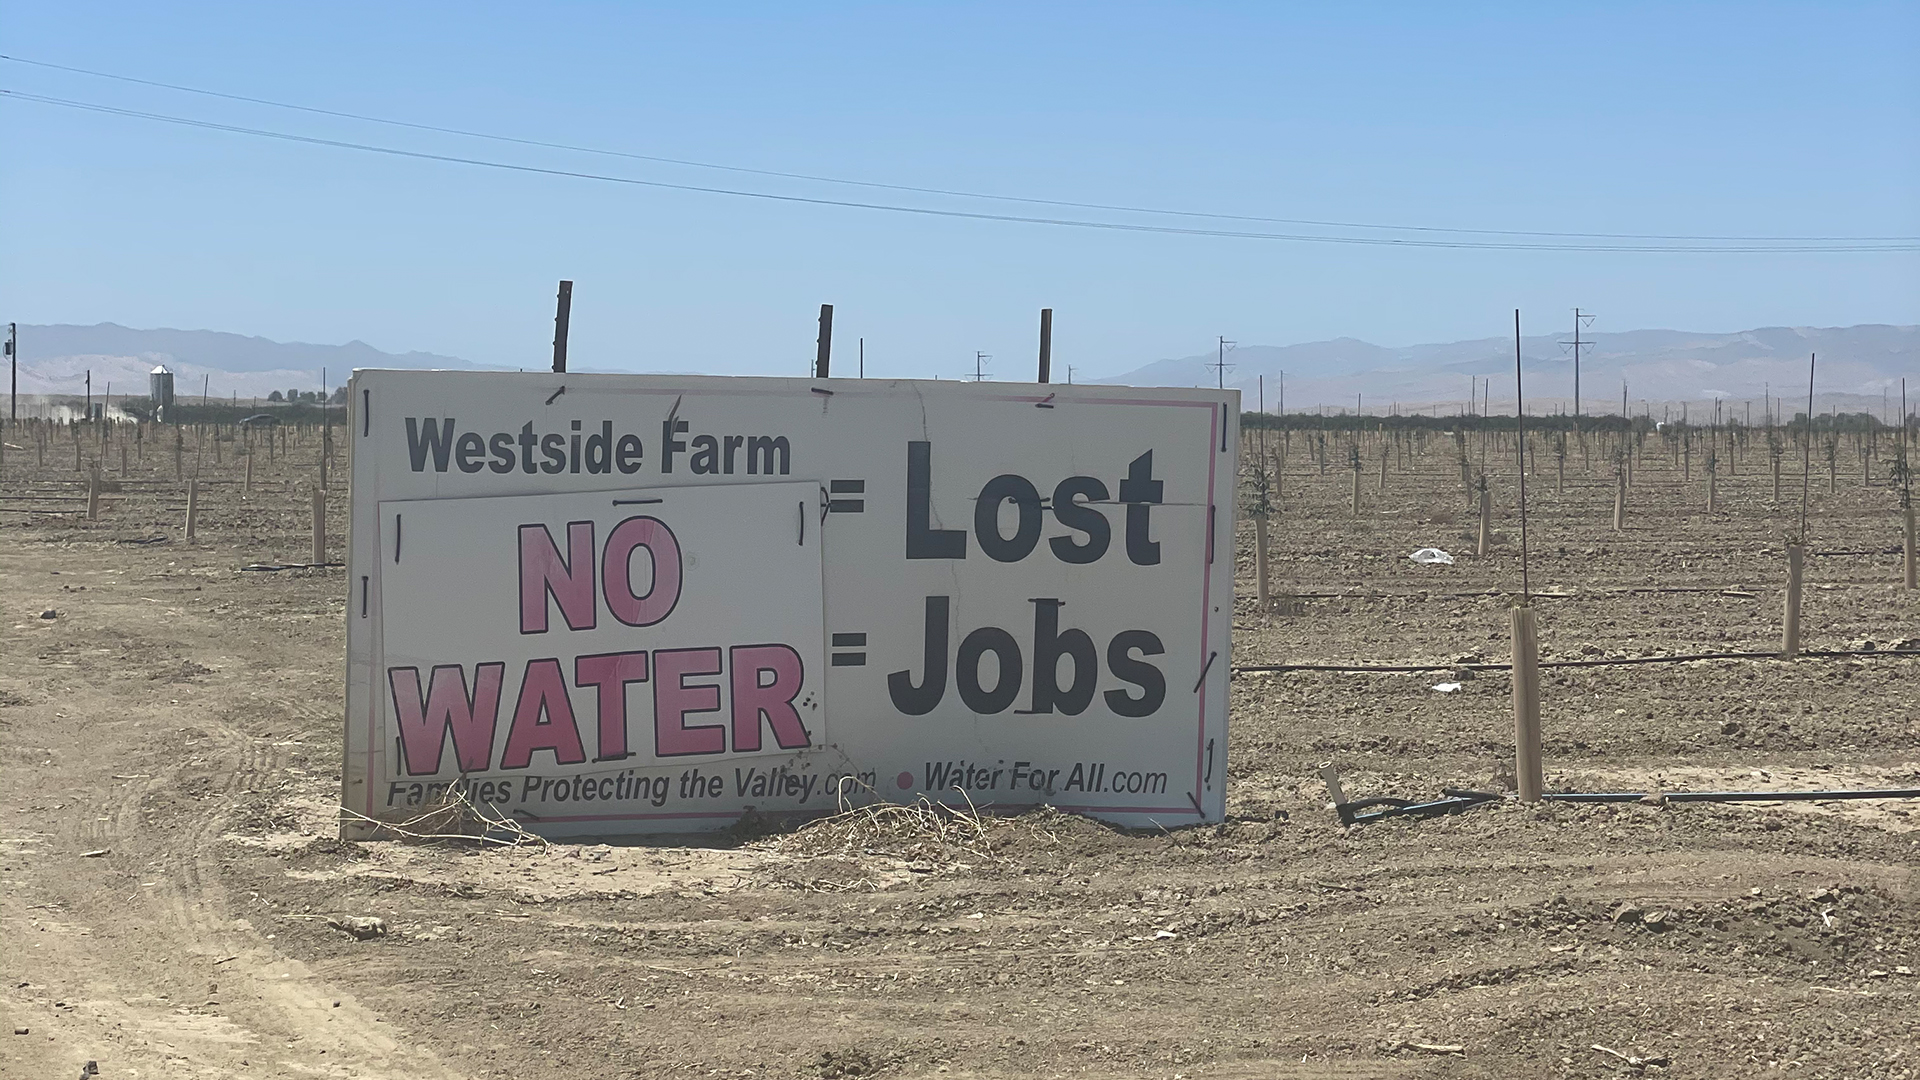 "No Water Lost Jobs" steht auf einem Plakat. | Christine Schacht, ARD-Studio Los Angeles